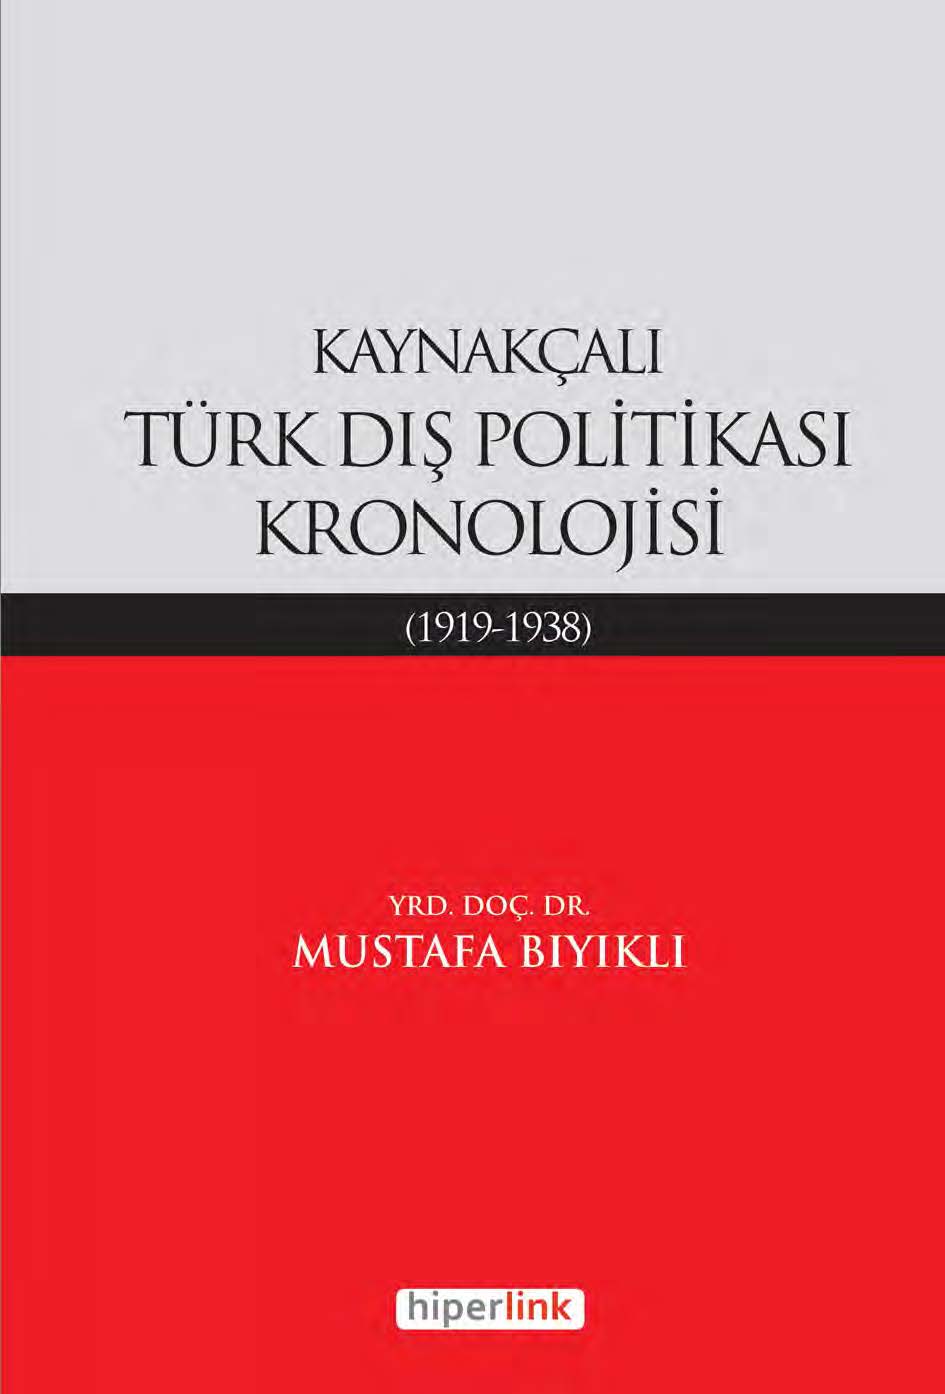 Kaynakçalı Türk Dış Politikası Kronolojisi (1919-1938)